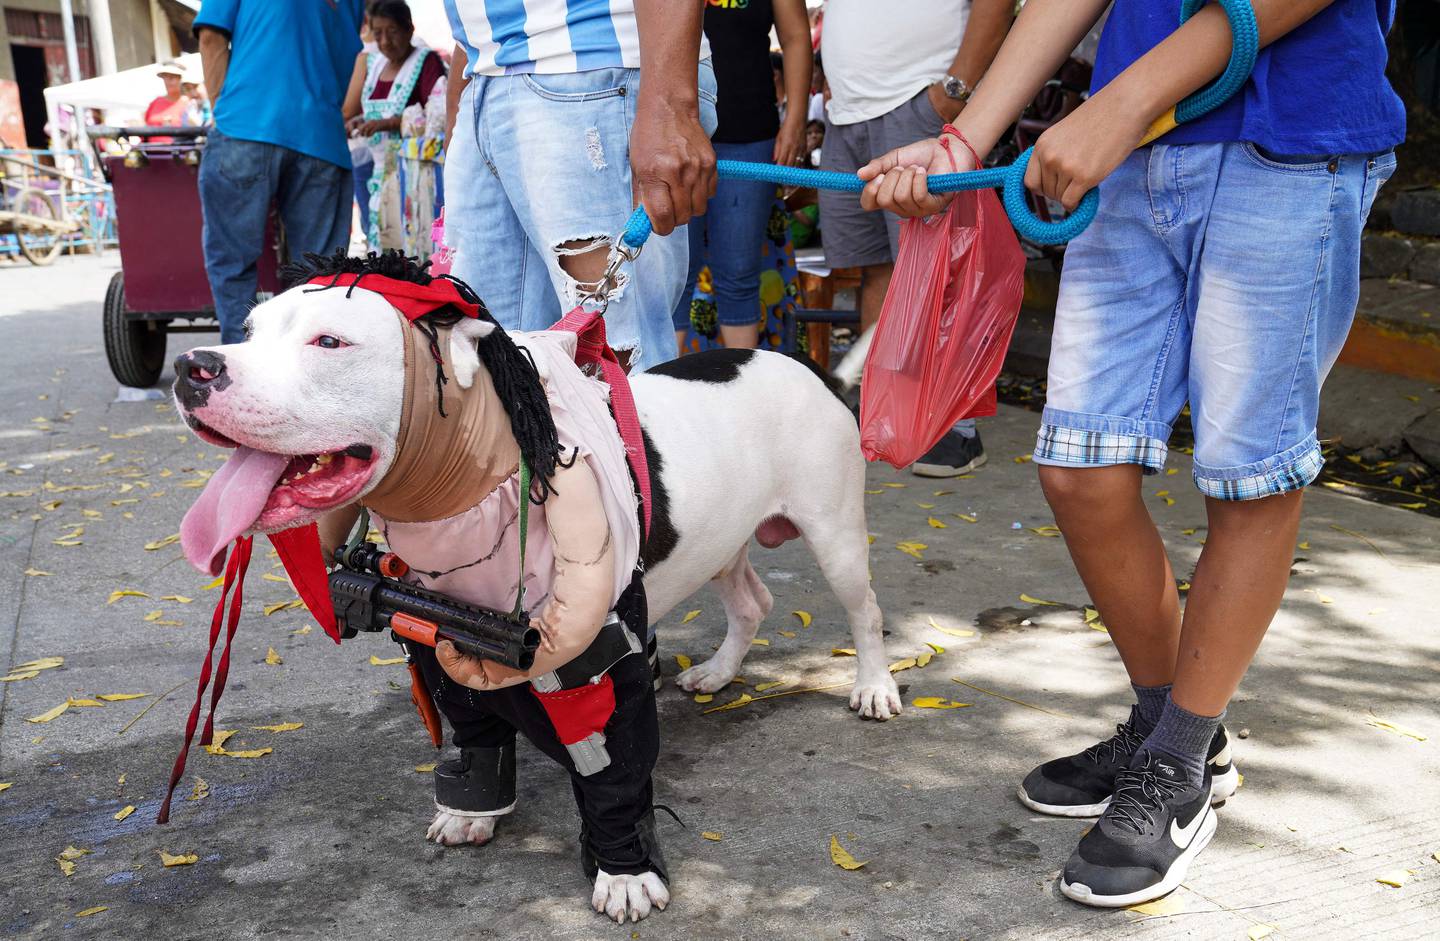 Cientos de perros vestidos como humanos fueron llevados por sus dueños este domingo a una iglesia de Nicaragua para agradecer favores a San Lázaro, en una tradición católica de hace más de un siglo.